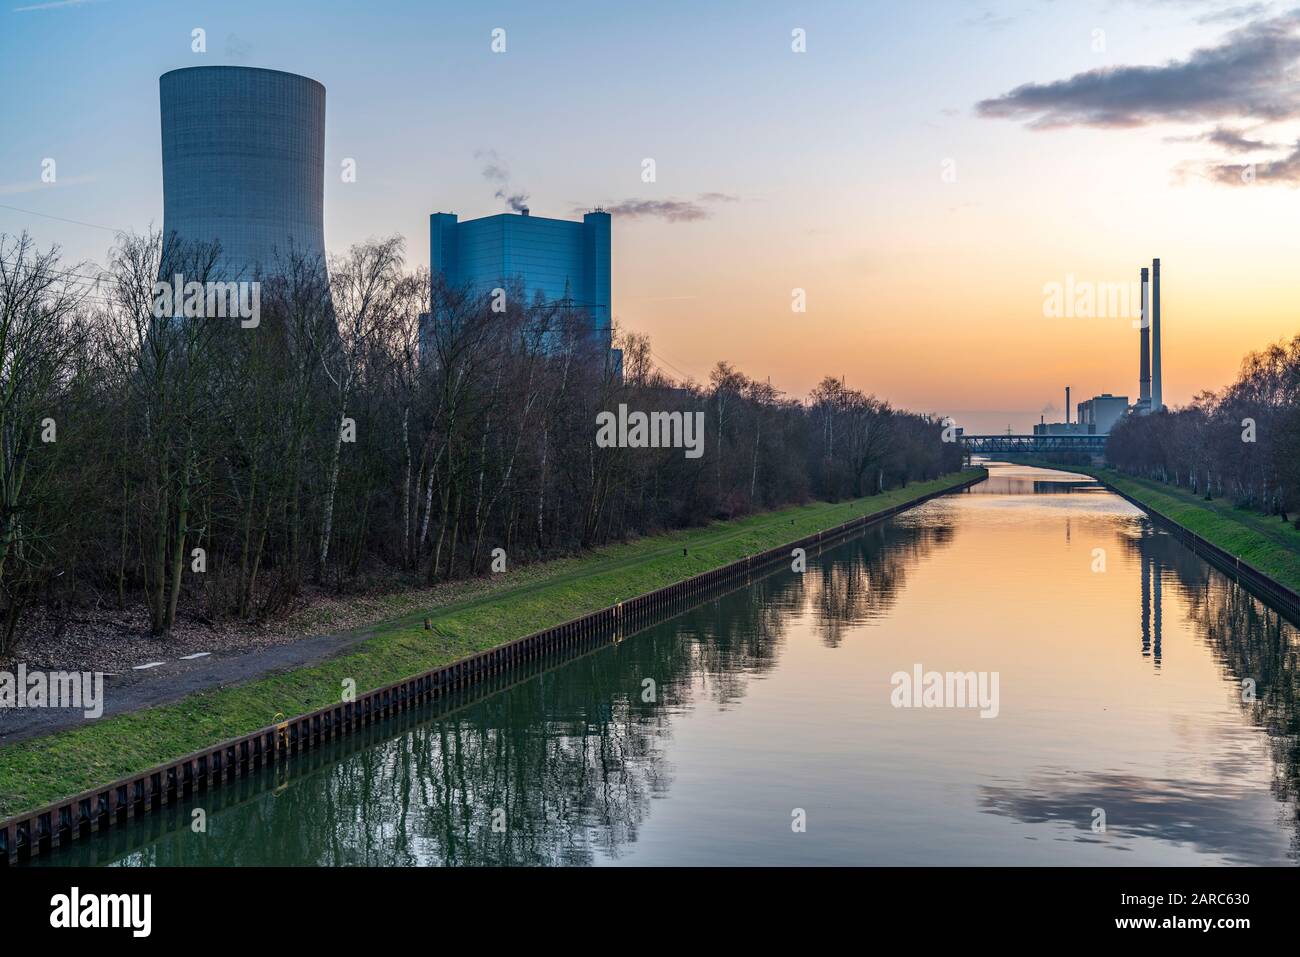 DAS Steinkohlekraftwerk Datteln 4, betrieben von Uniper, Am Dormtund-Ems-Kanal, es soll, nach dem Kohlkompromiss, im Sommer 2020 ans Netz gehen, rech Banque D'Images